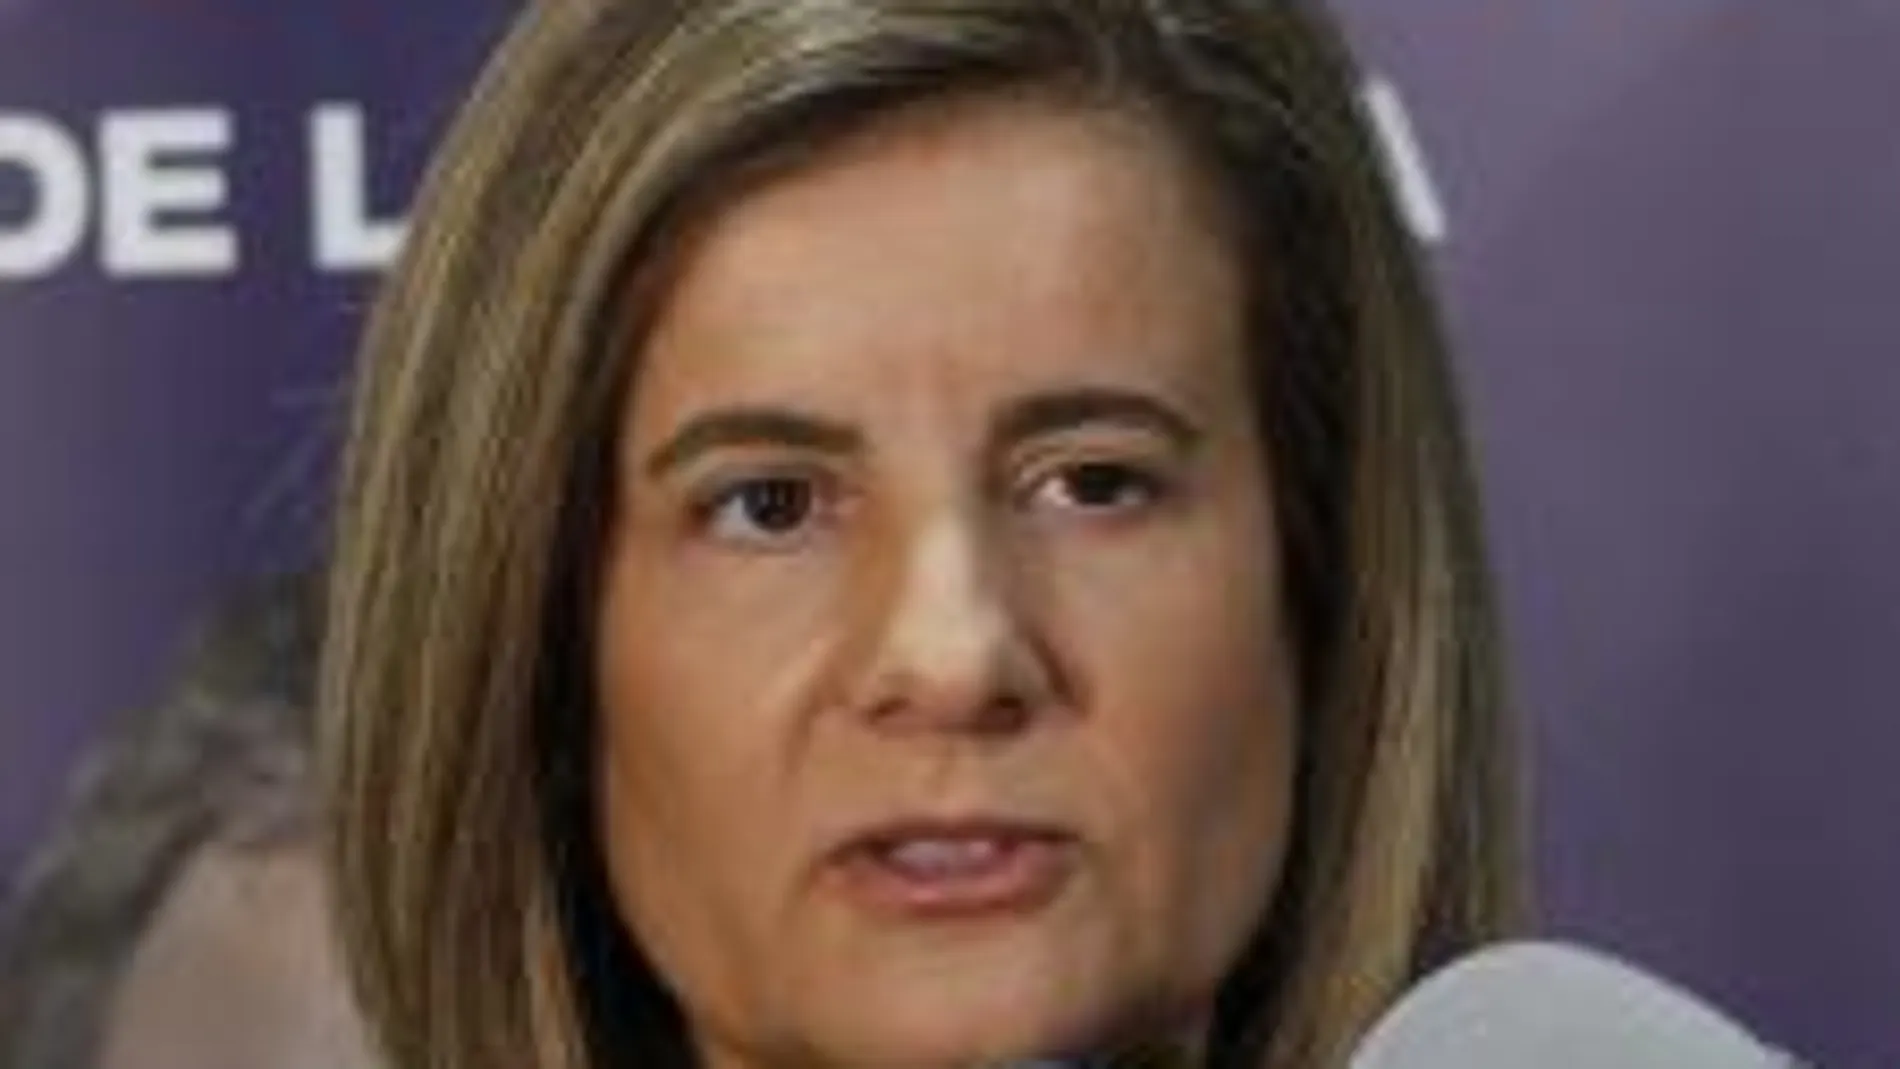 La ministra de Empleo y Seguridad Social, Fátima Báñez.